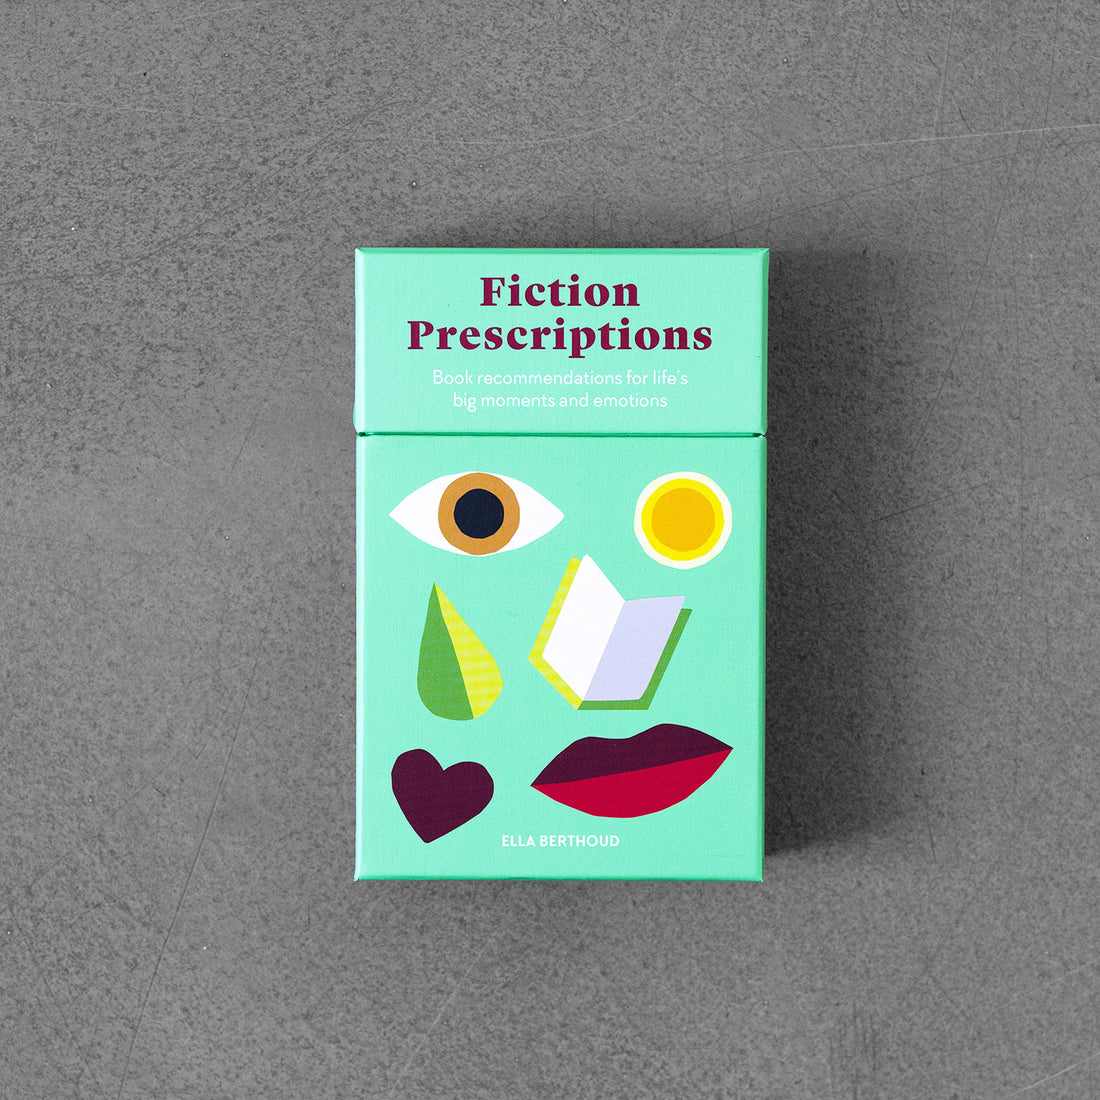 Recepty na fikcję: KARTY Biblioterapii dla współczesnego życia